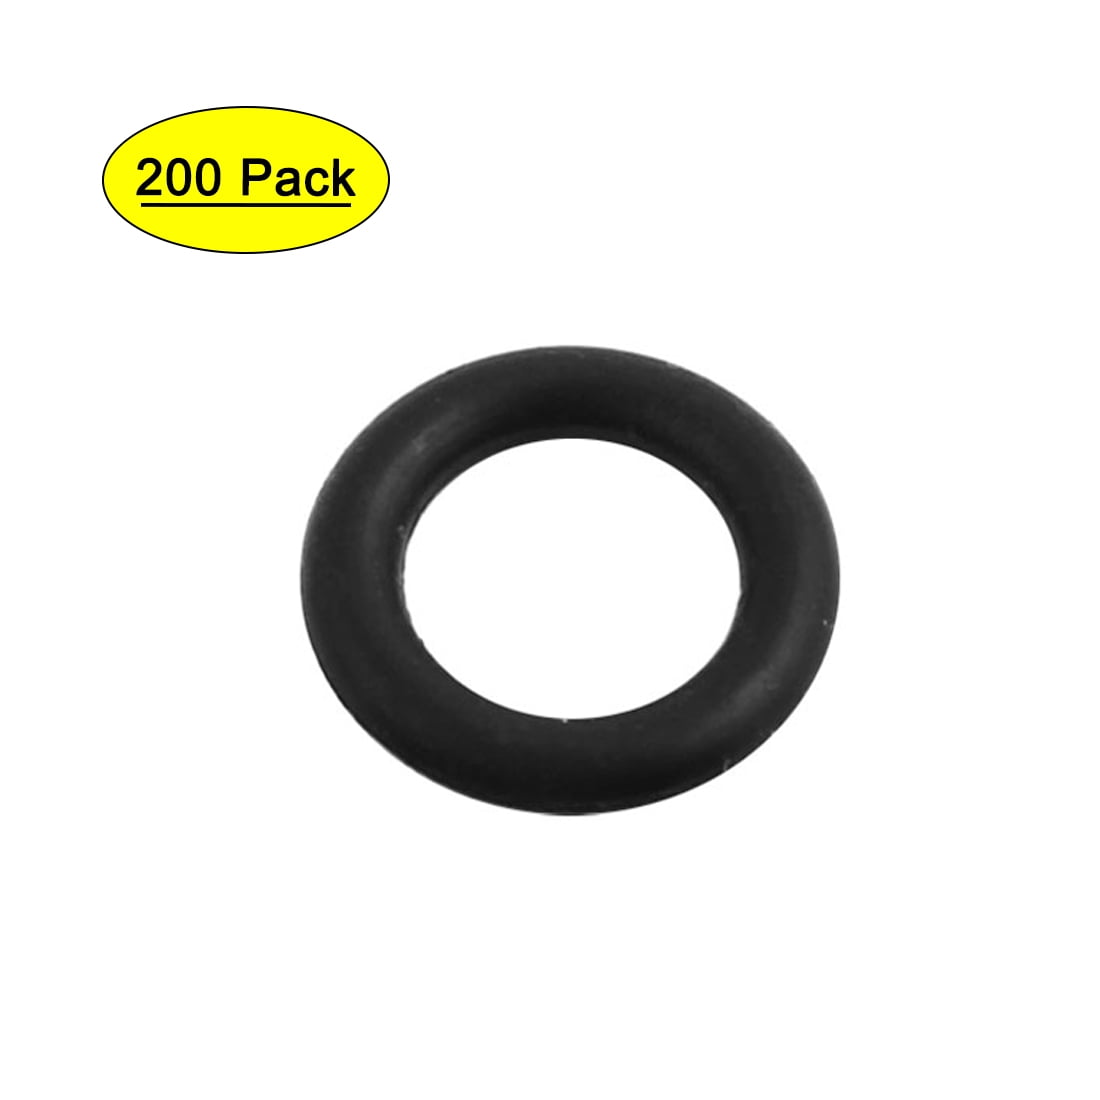 200 Pcs 8mm Inner Diameter Black Rubber Seal Rings Grommets 